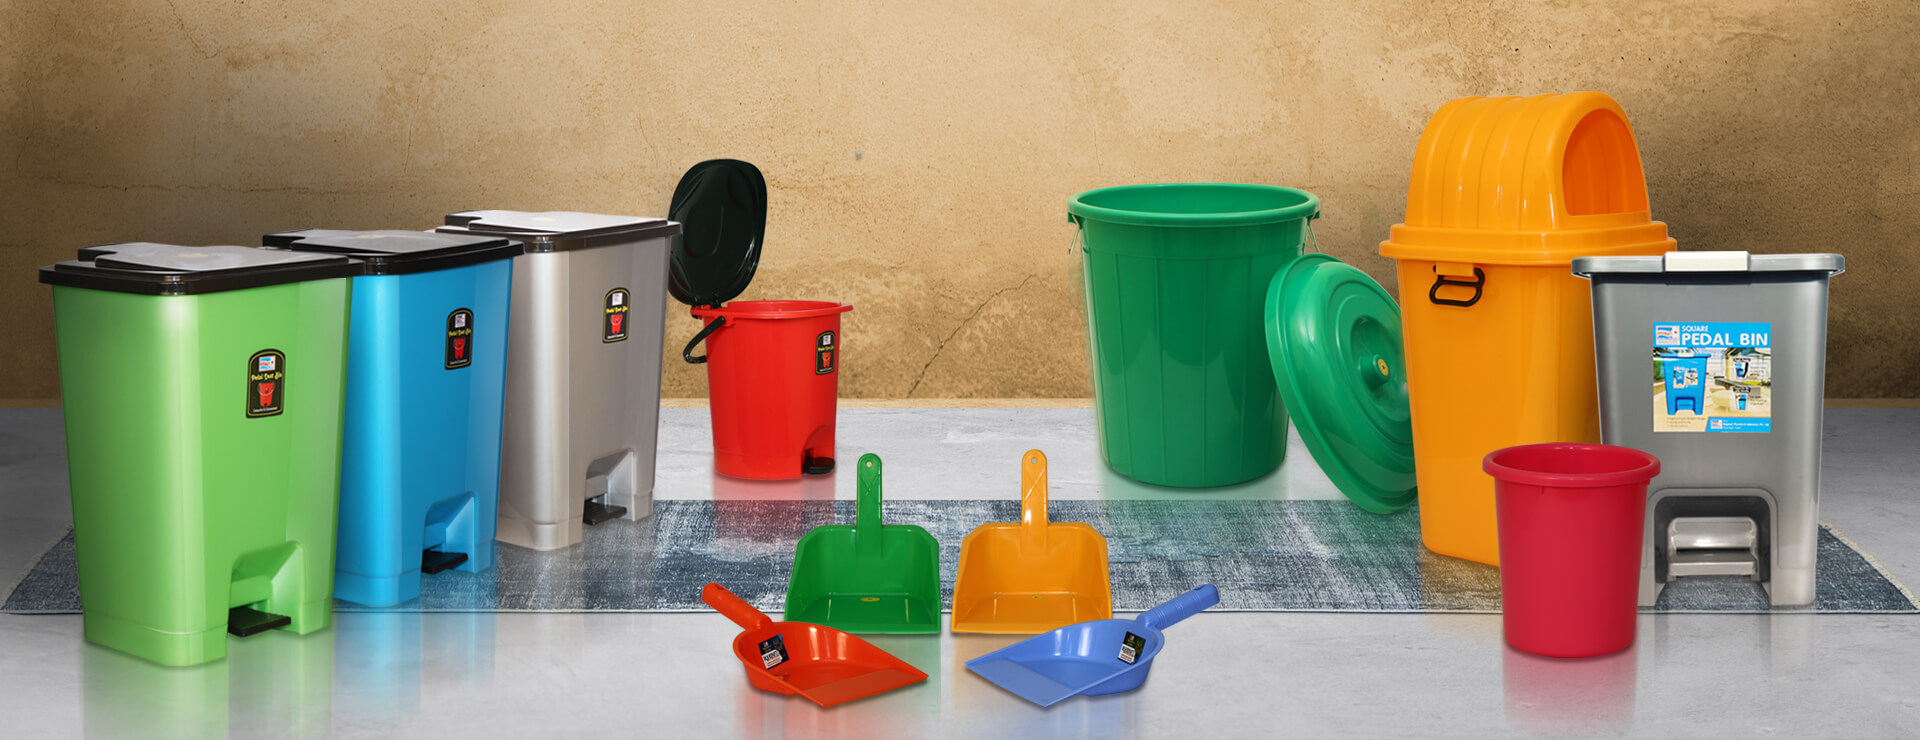 Waste-Management essentials at bagmati plastics